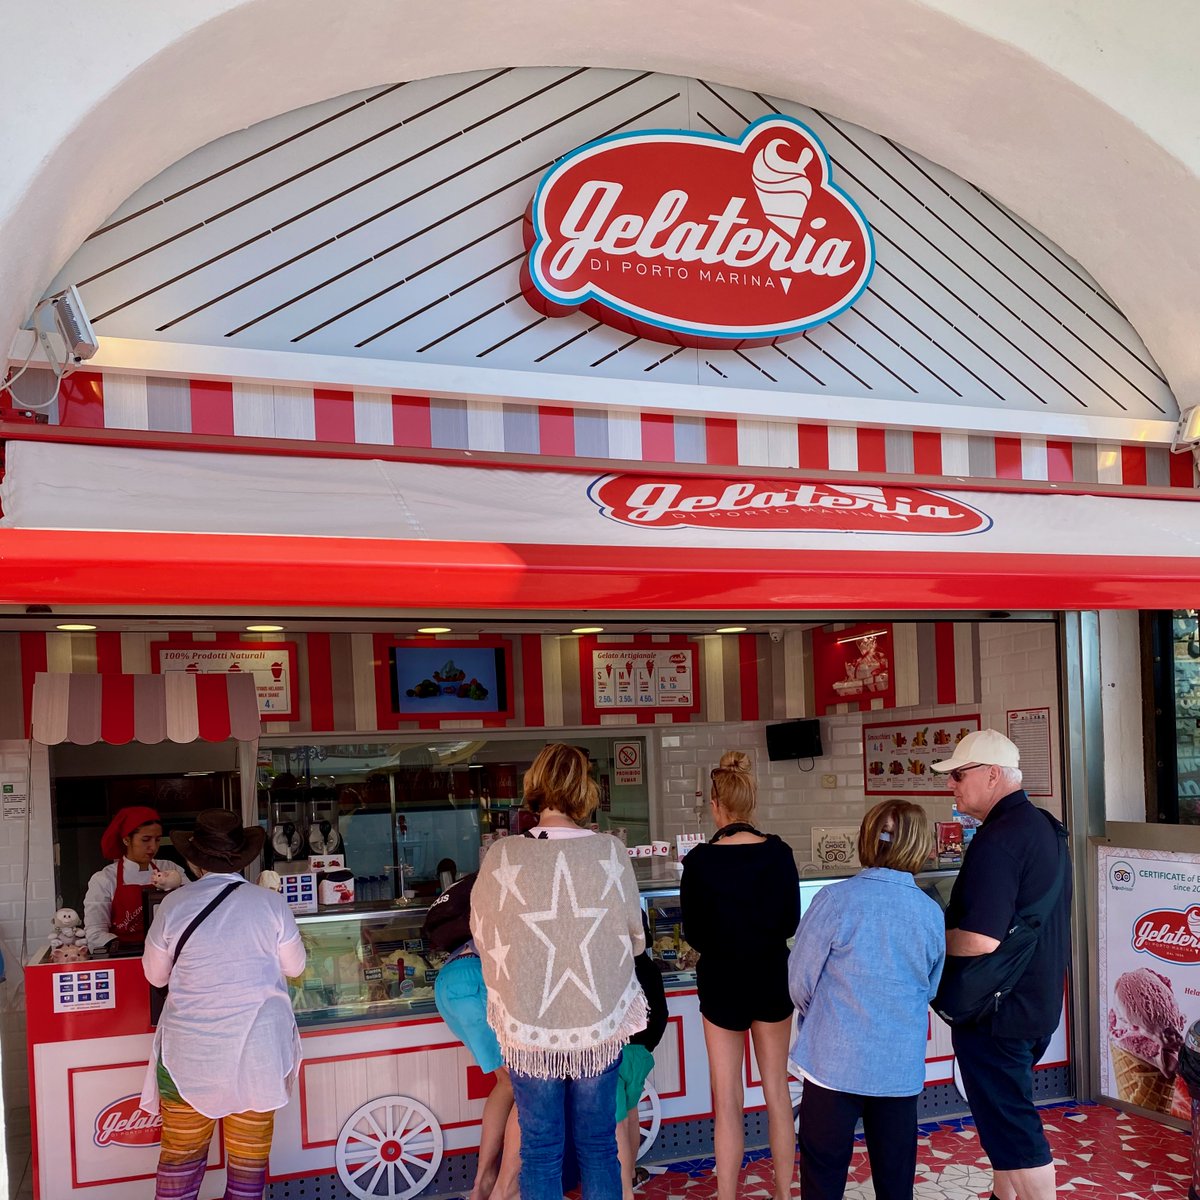 ¡Buenas tardes! Como podéis ver, ¡estamos abiertos al público! ¡Os esperamos!
------
Afternoon everyone. As you can see we are open for business! We look forward to seeing you!

##heladoitaliano #italianicecream #icecream #milkshake #icecreamcones #foodies #batidos